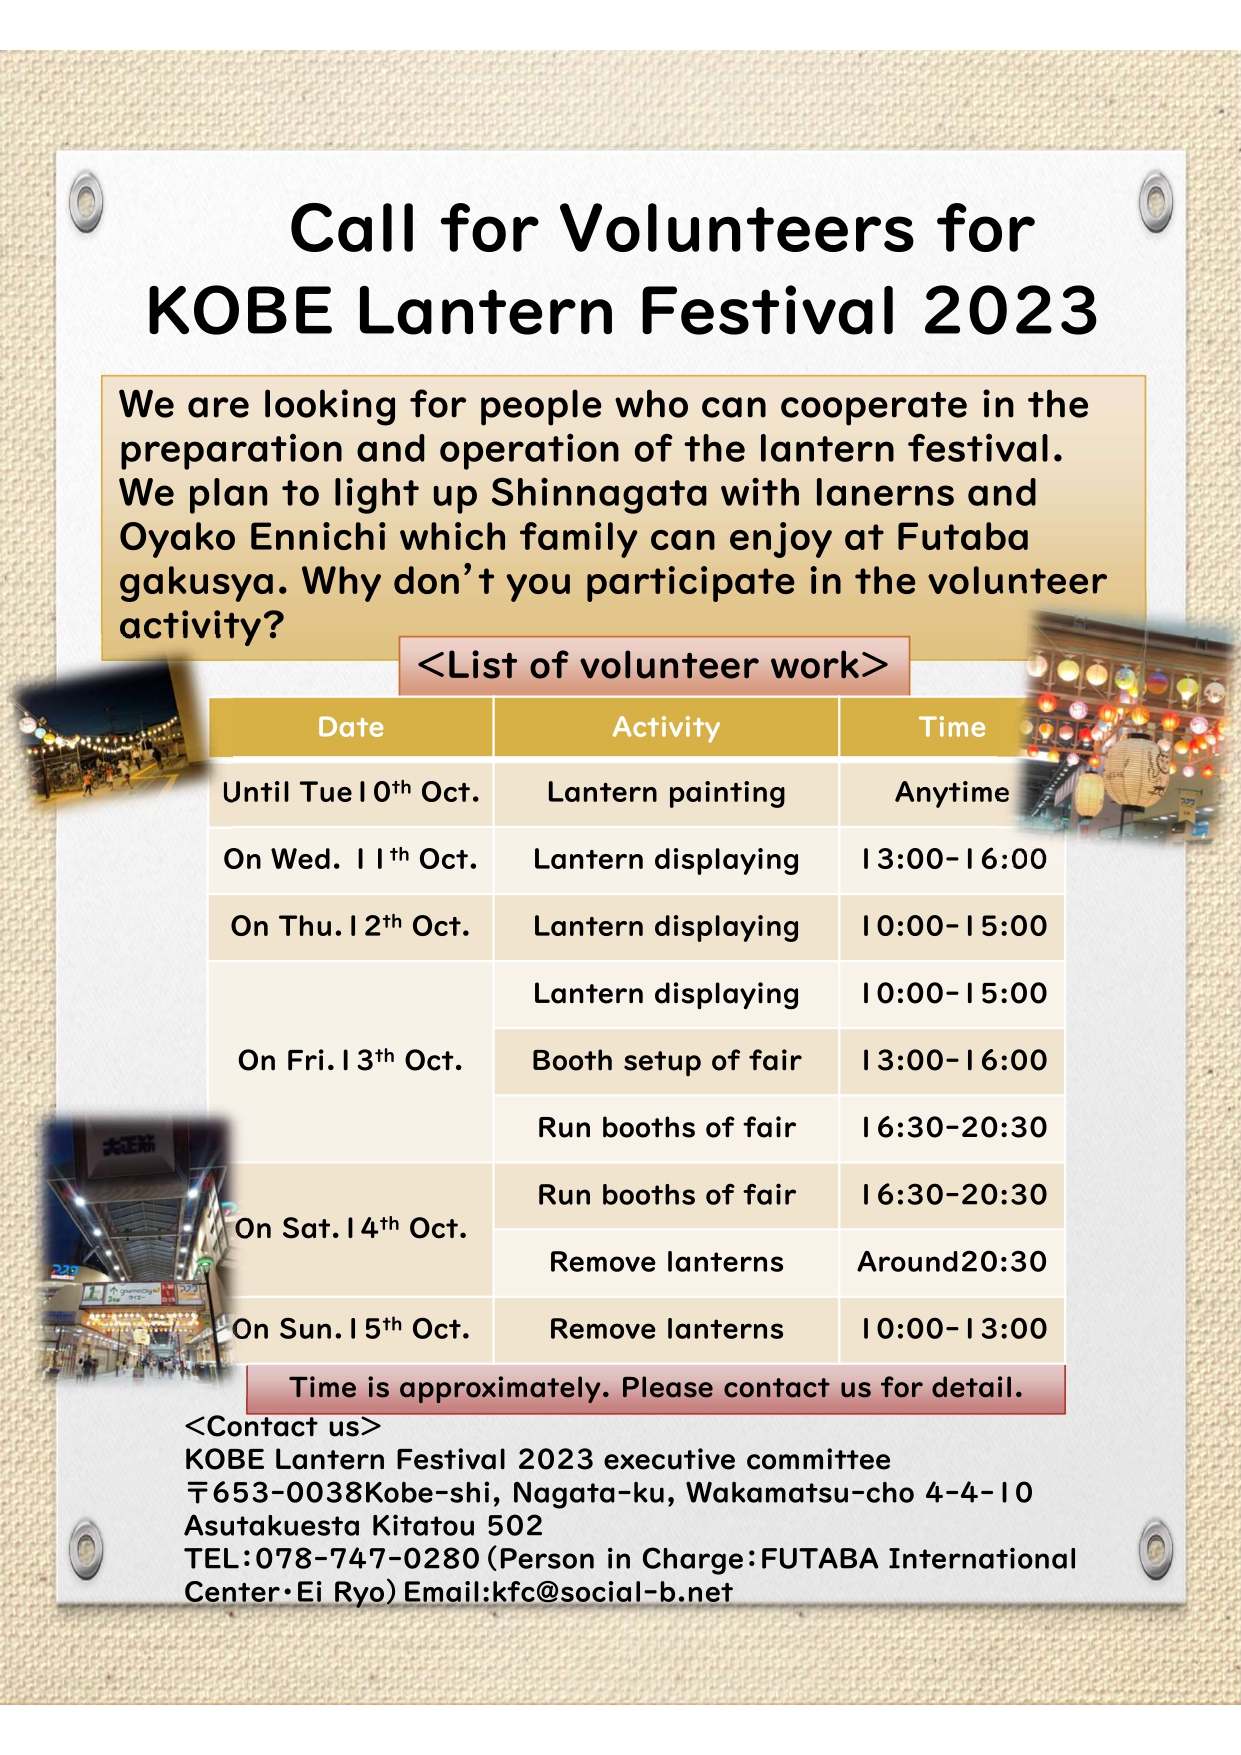 Call for volunteers for Kobe Lantern Festival 2023